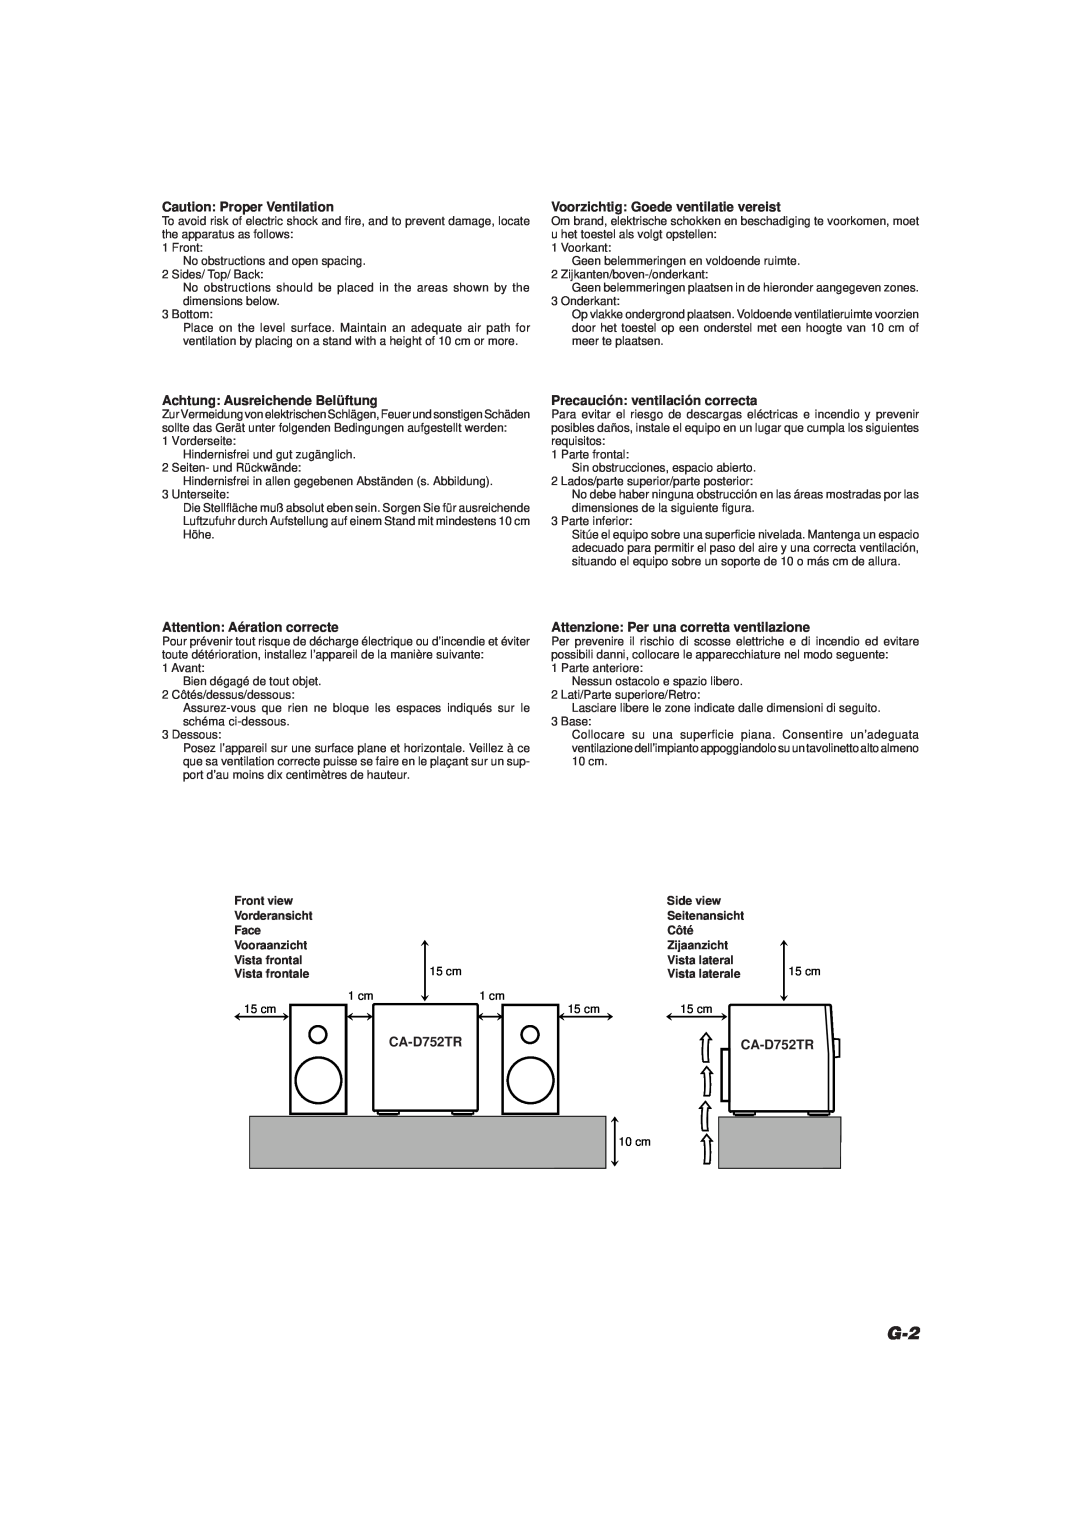 JVC CA-D752TR manual Caution Proper Ventilation, Voorzichtig Goede ventilatie vereist, Achtung Ausreichende Belüftung 